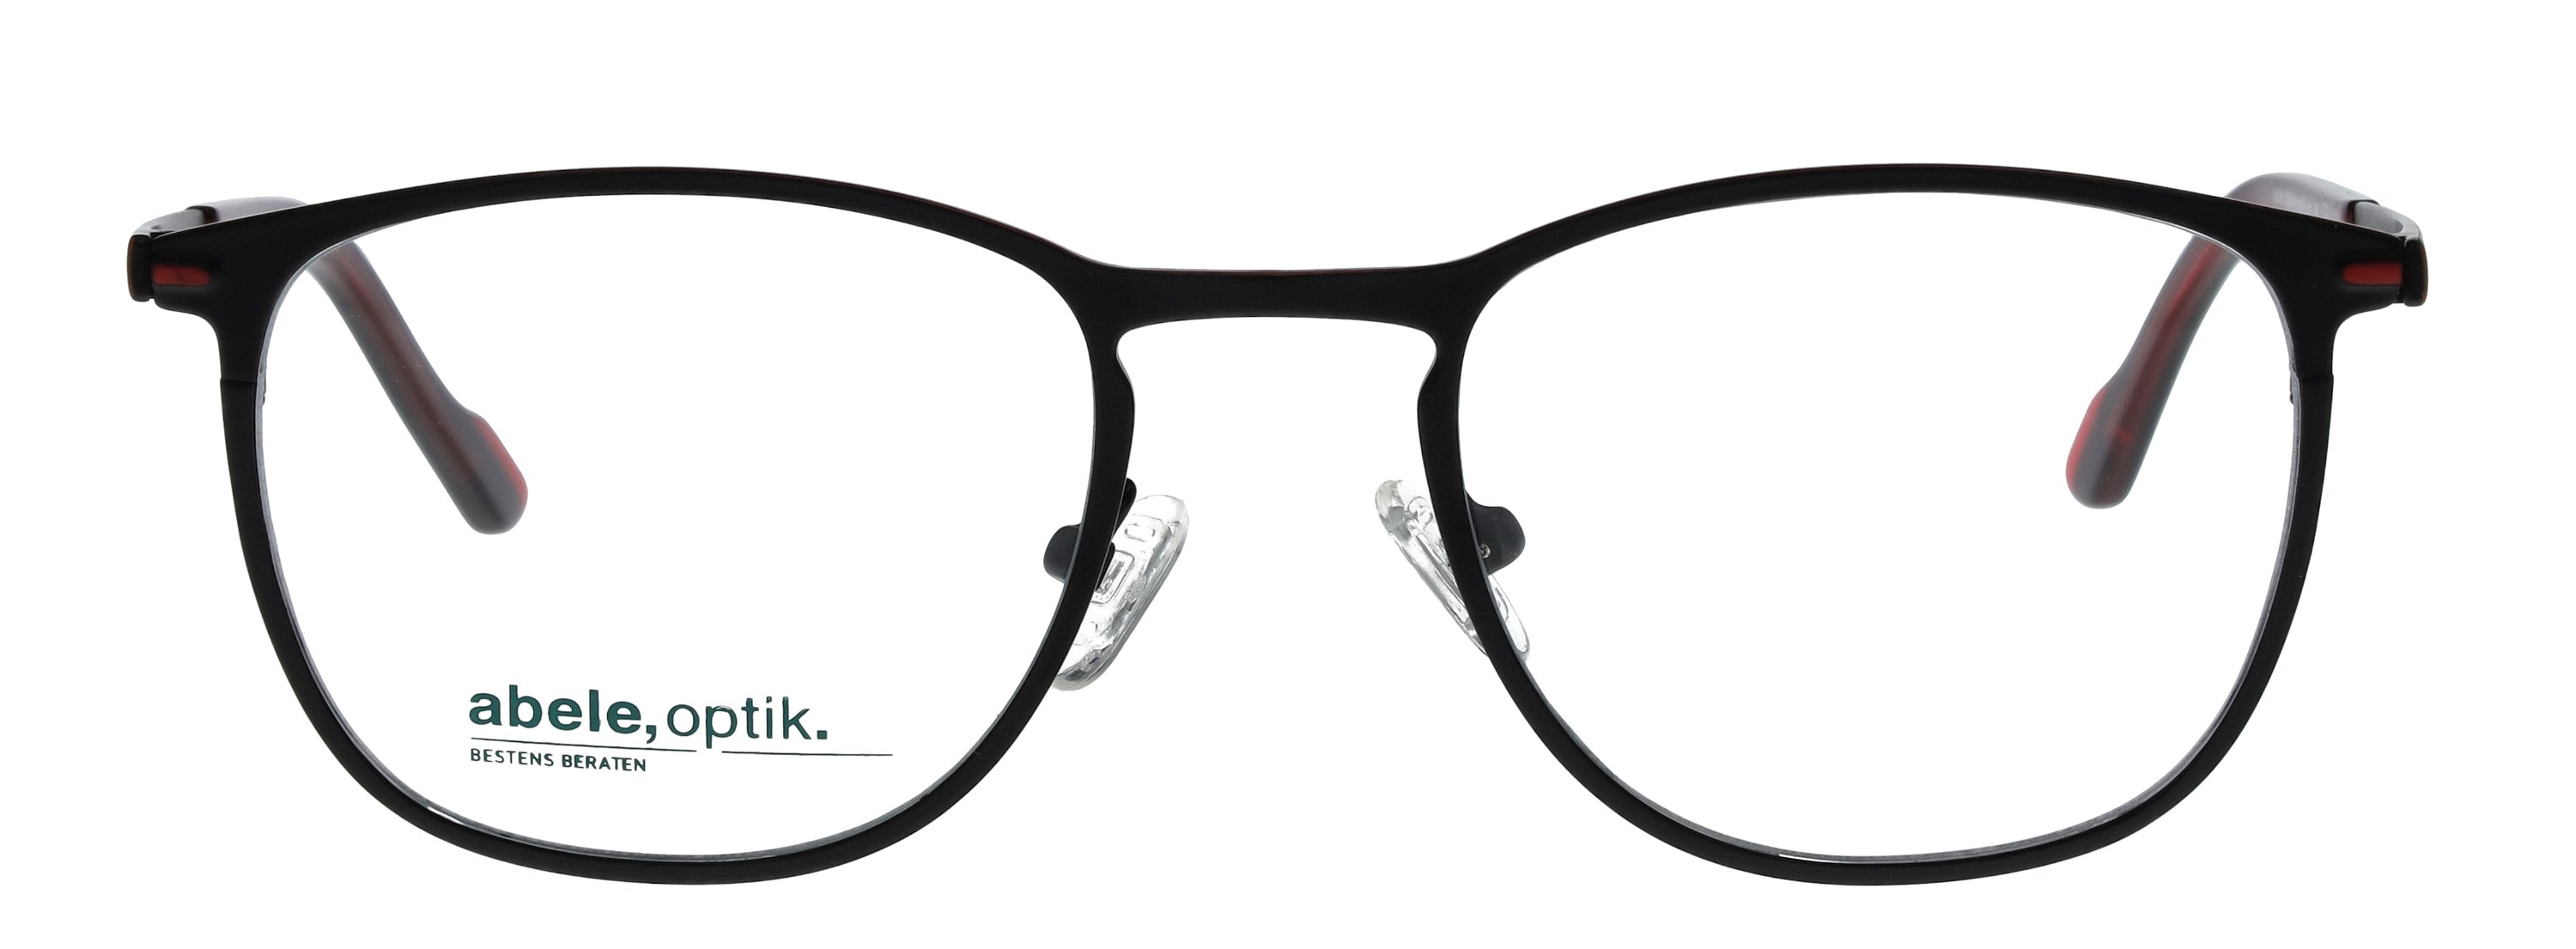 Das Bild zeigt die Korrektionsbrille 147861 von der Marke Abele Optik in schwarz matt.